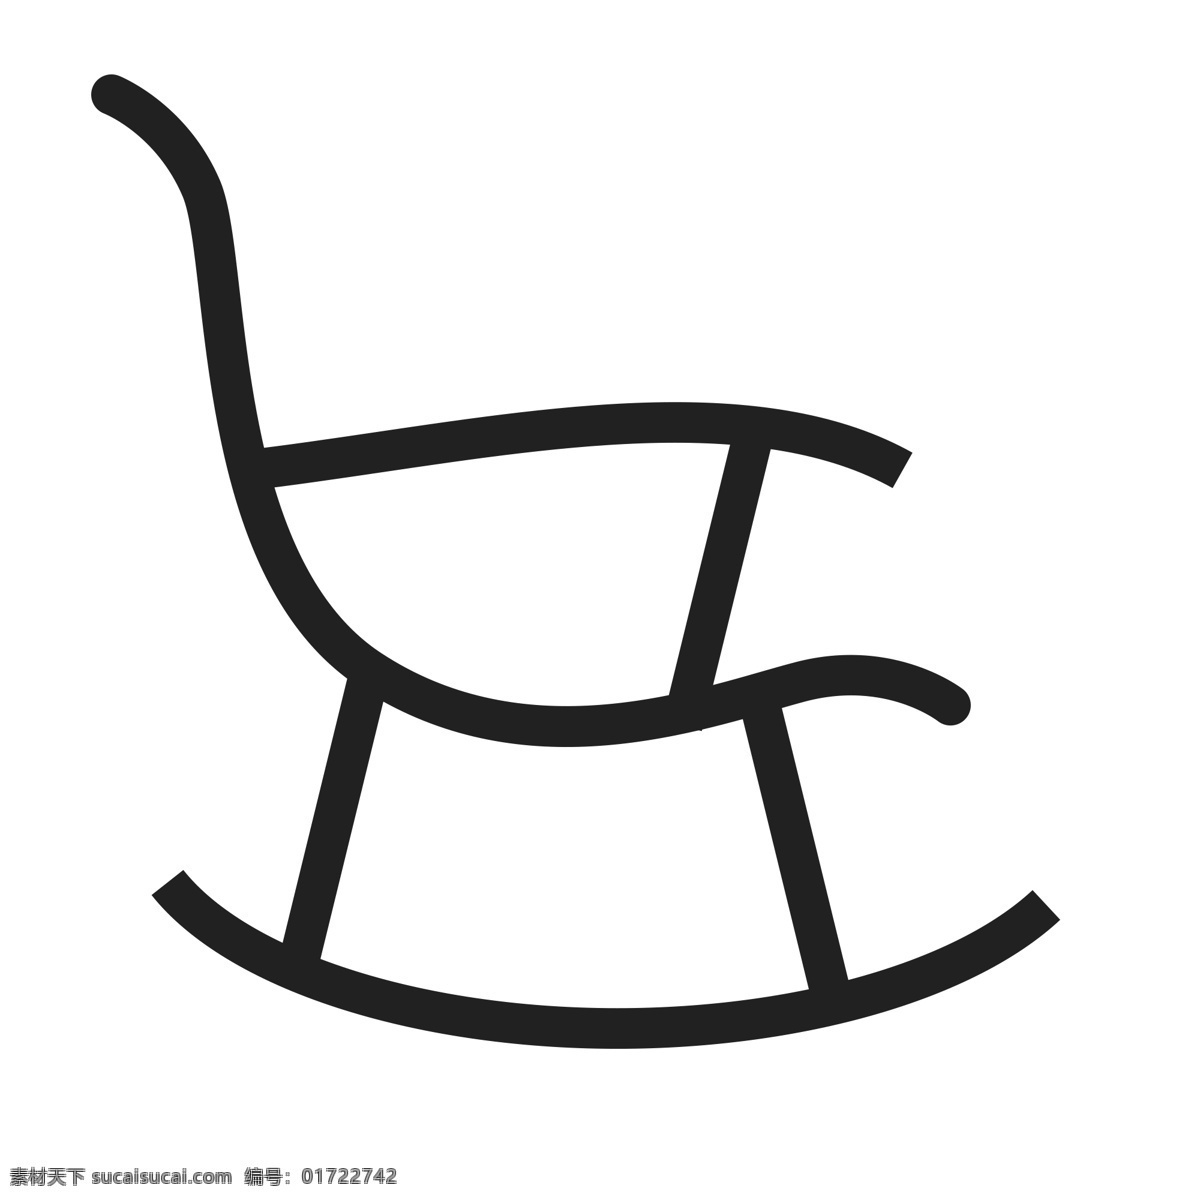 扁平化摇椅 摇椅 扁平化ui ui图标 手机图标 界面ui 网页ui h5图标